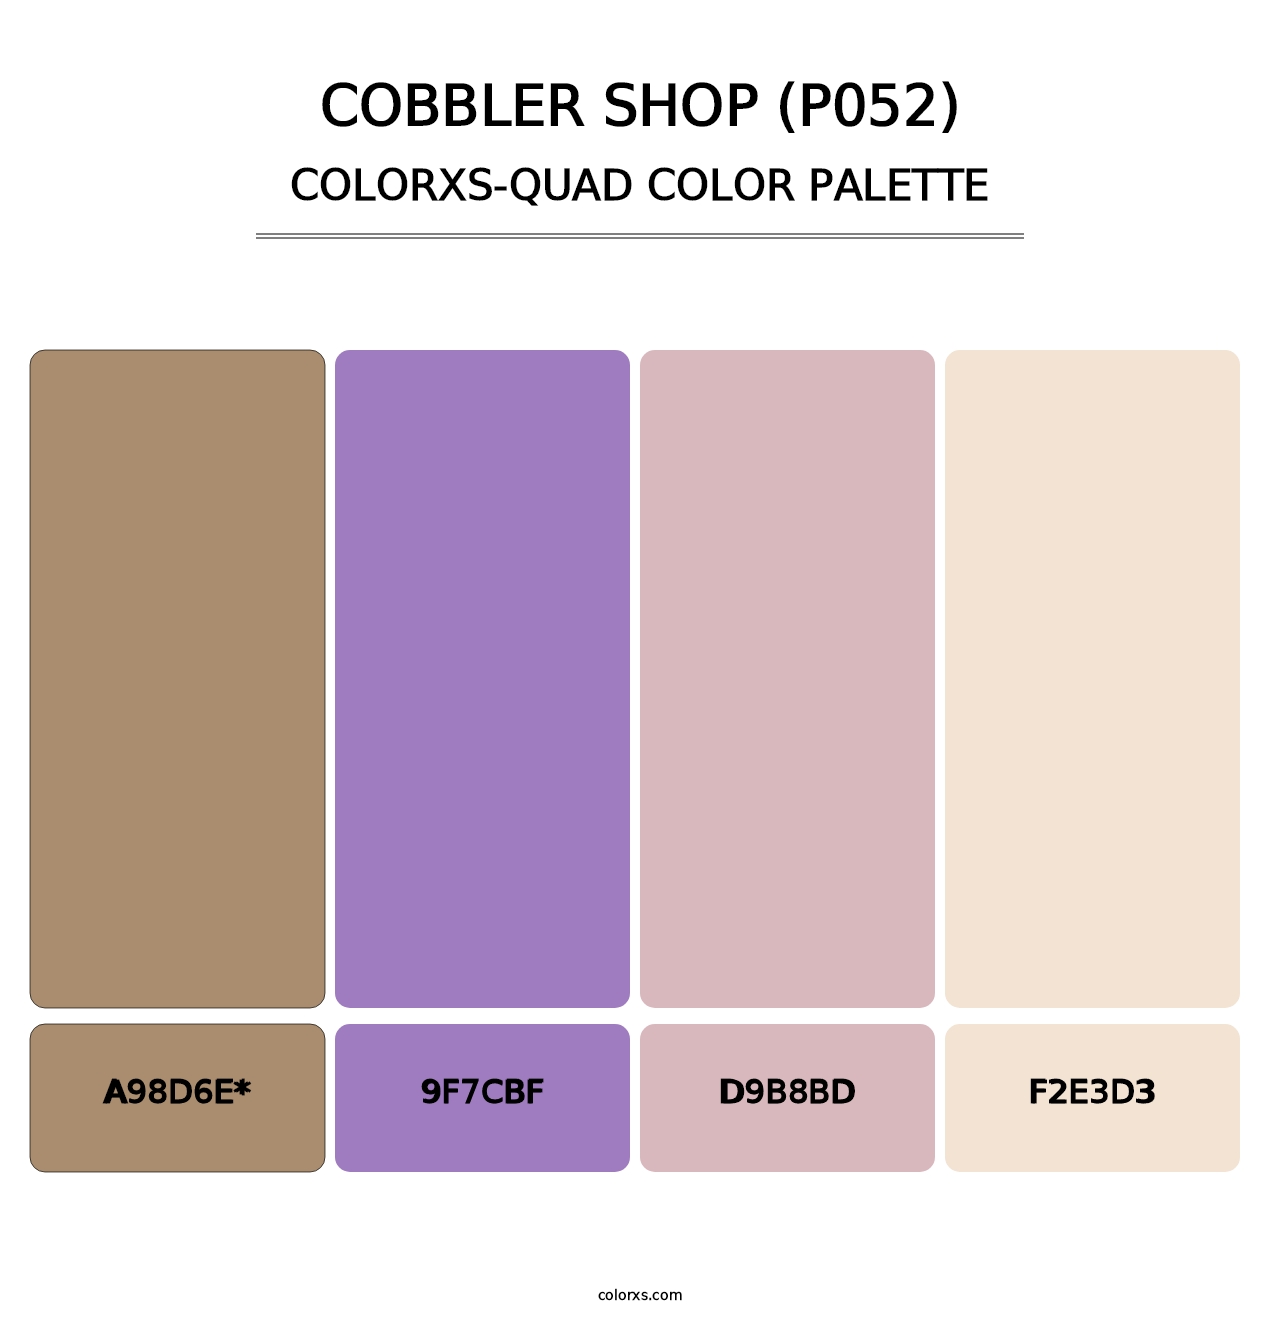 Cobbler Shop (P052) - Colorxs Quad Palette